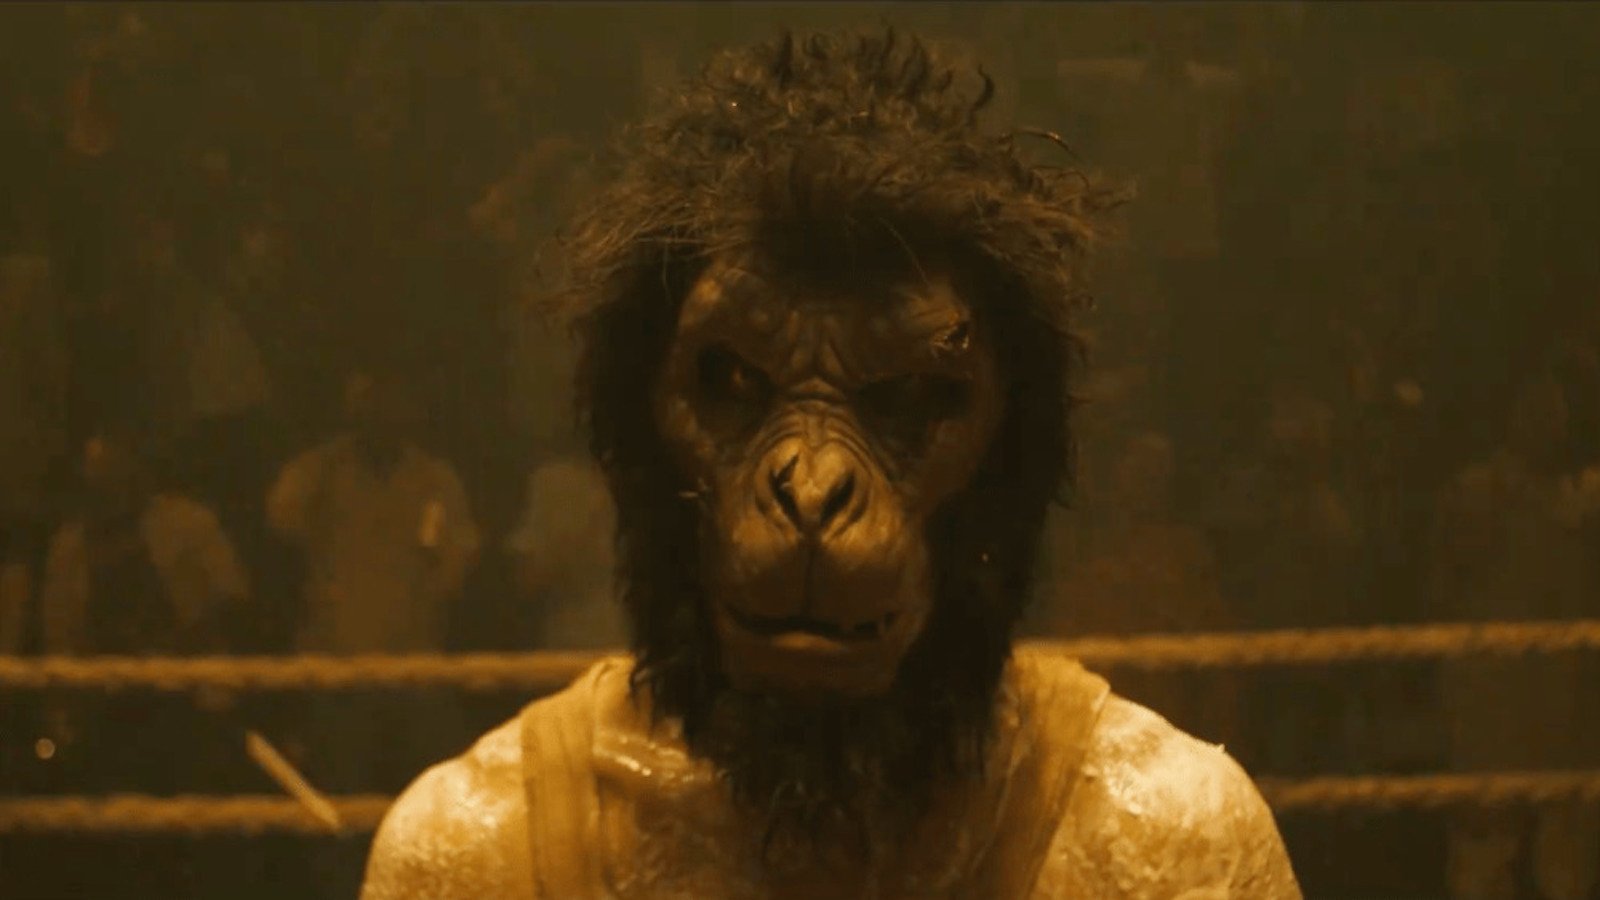 Monkey Man, l'esordio alla regia di Dev Patel convince tutti: punteggio quasi perfetto su Rotten Tomatoes